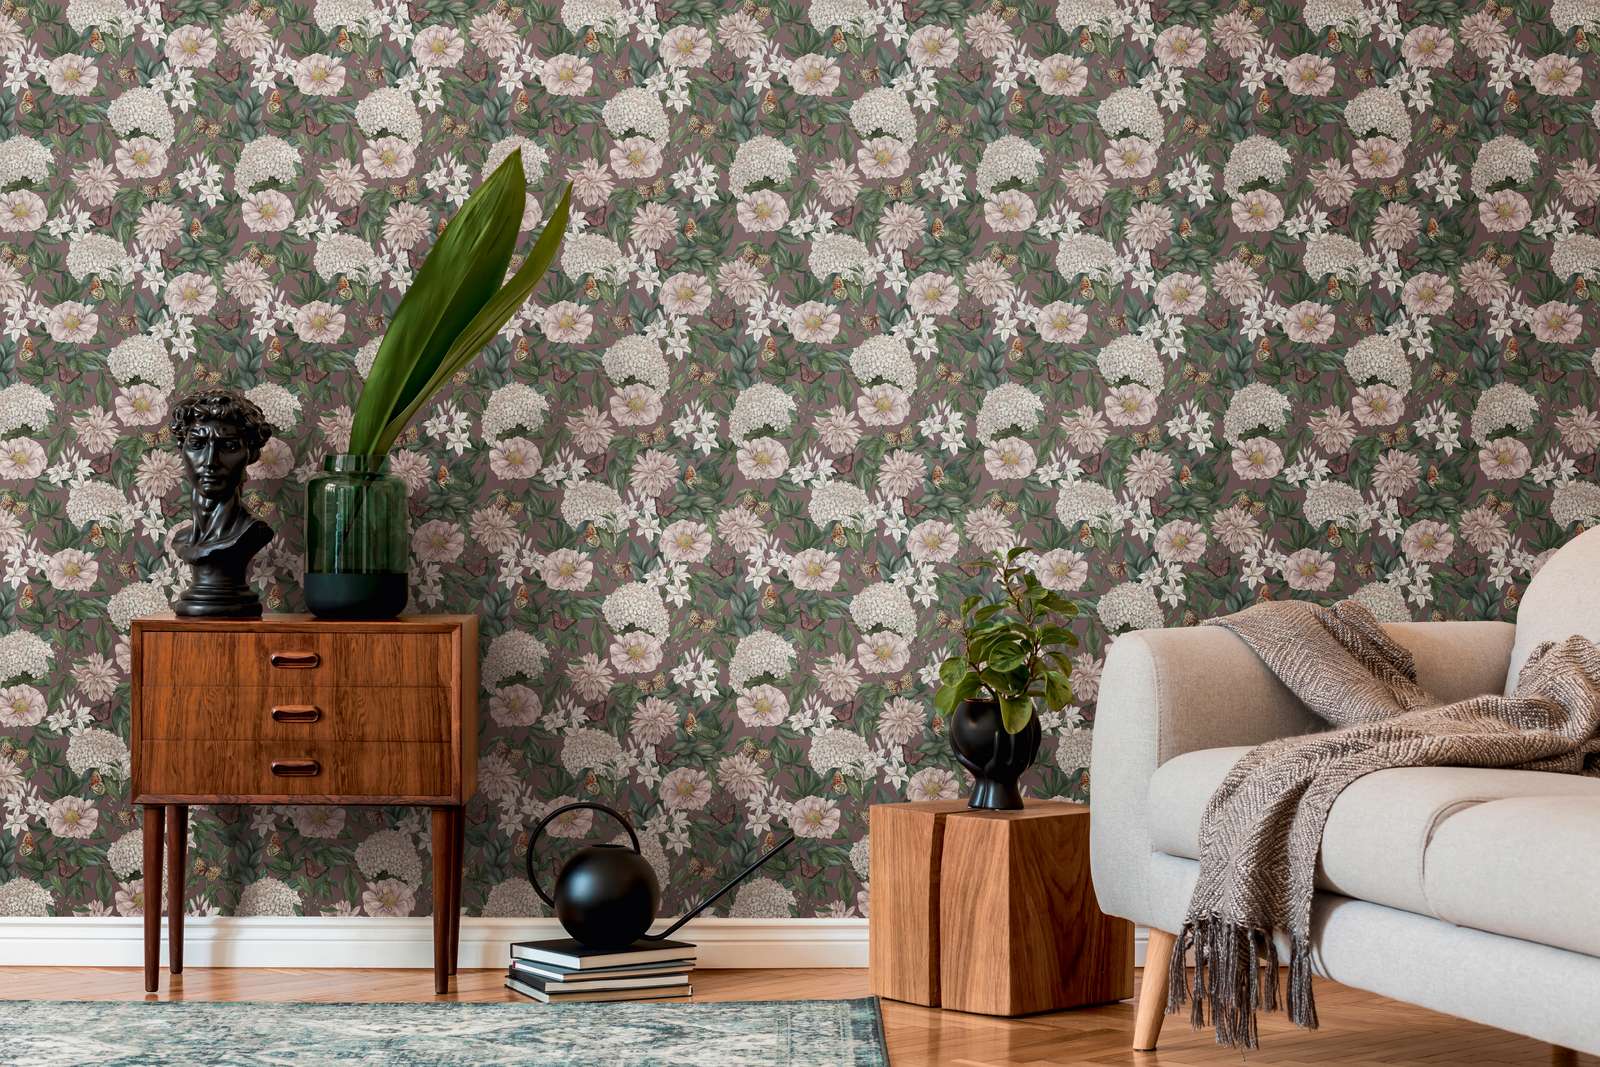             Modern wallpaper floral with flowers & butterflies textured matt - bordeaux, pink, dark green
        